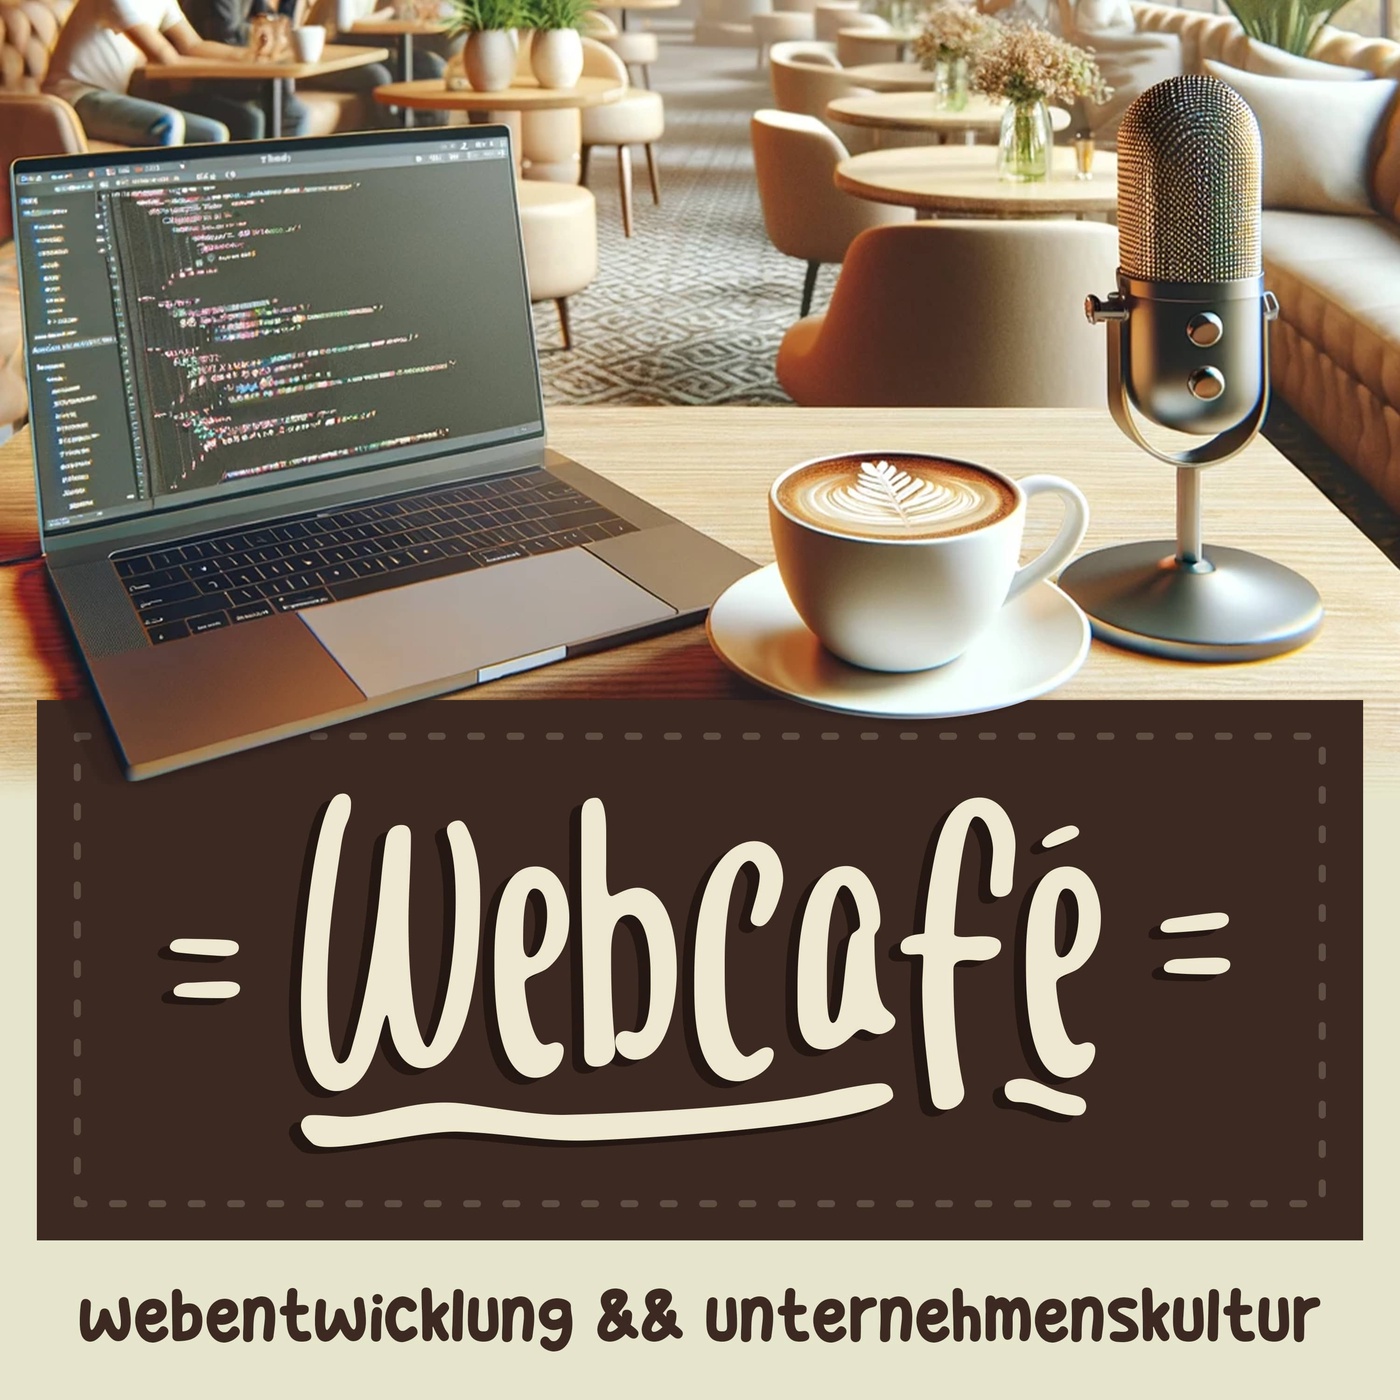 Webcafé - Webentwicklung und Unternehmenskultur